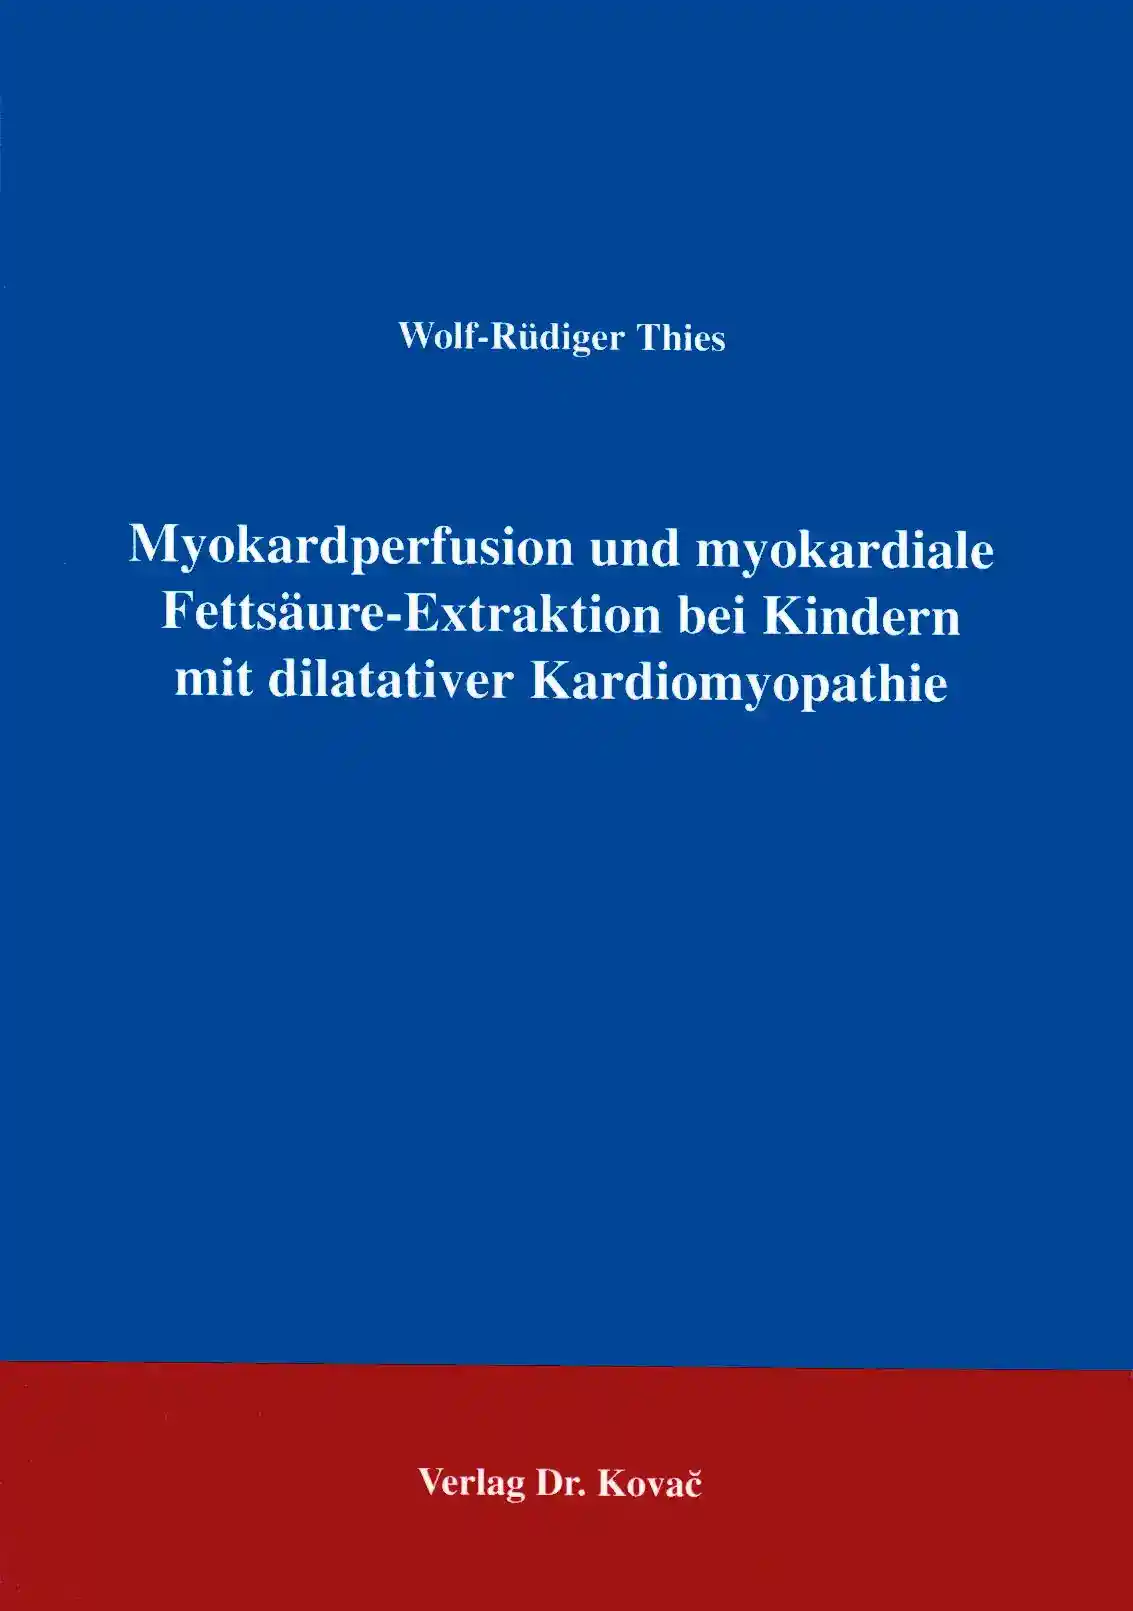 Myokardperfusion und myokardiale Fettsäure-Extraktion bei Kindern mit dilatativer Kardiomyopathie (Forschungsarbeit)